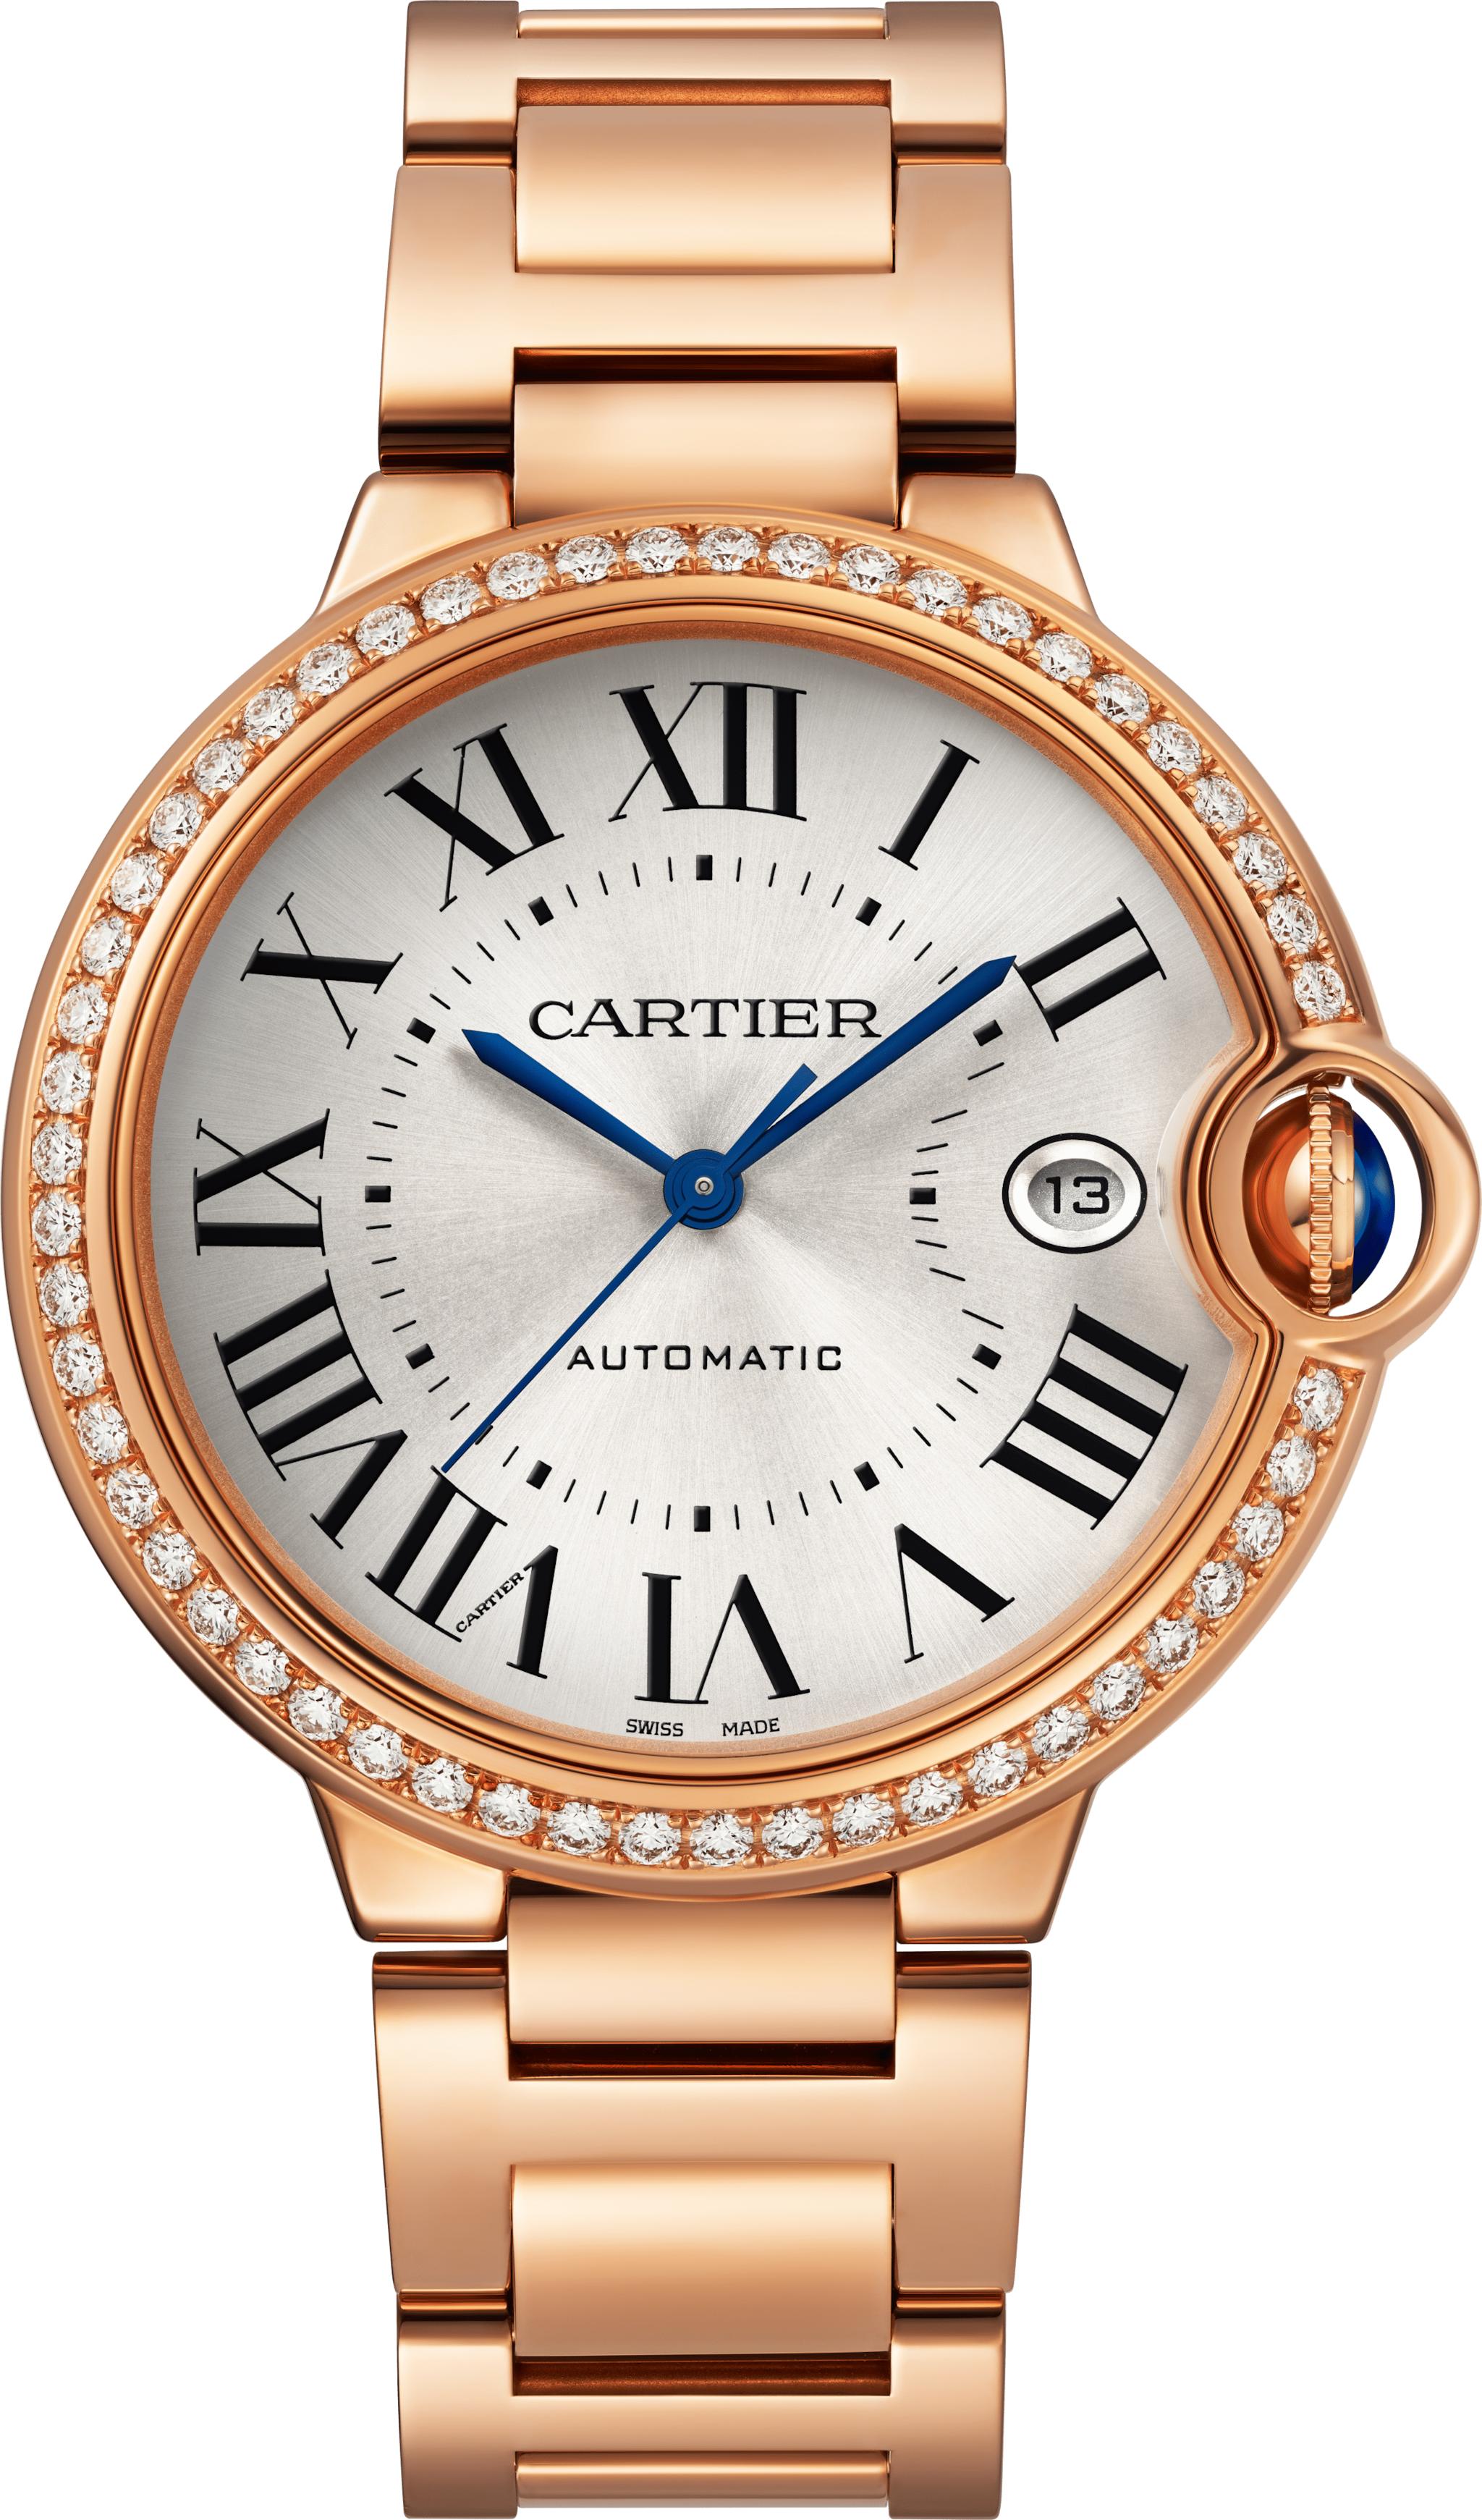 Ballon Bleu de Cartier watch40mm, automatic movement, rose gold, diamonds